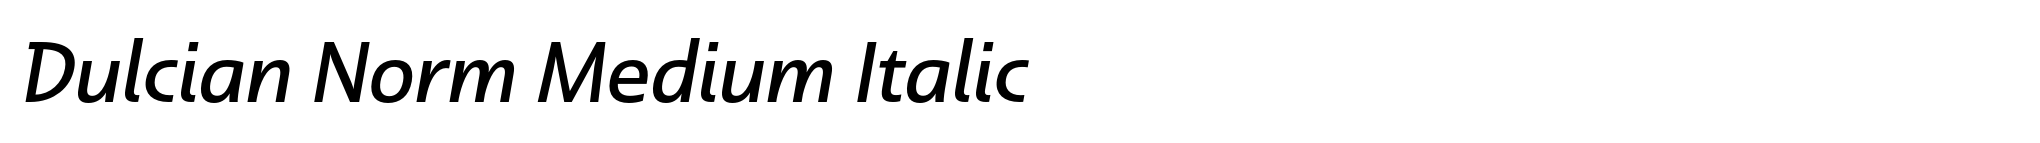 Dulcian Norm Medium Italic image